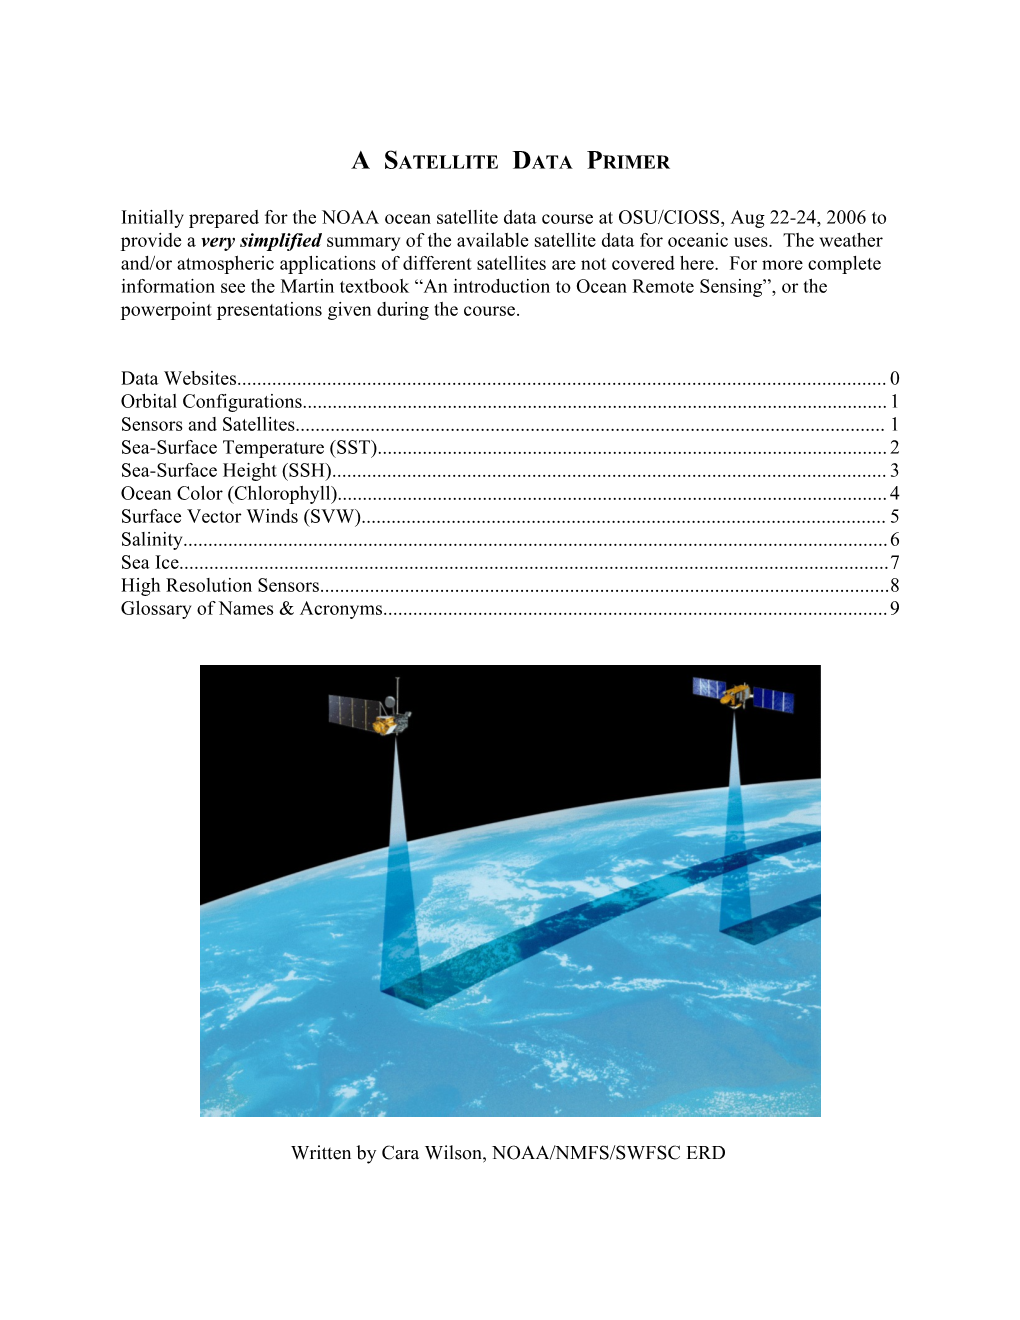 A Satellite Data Primer